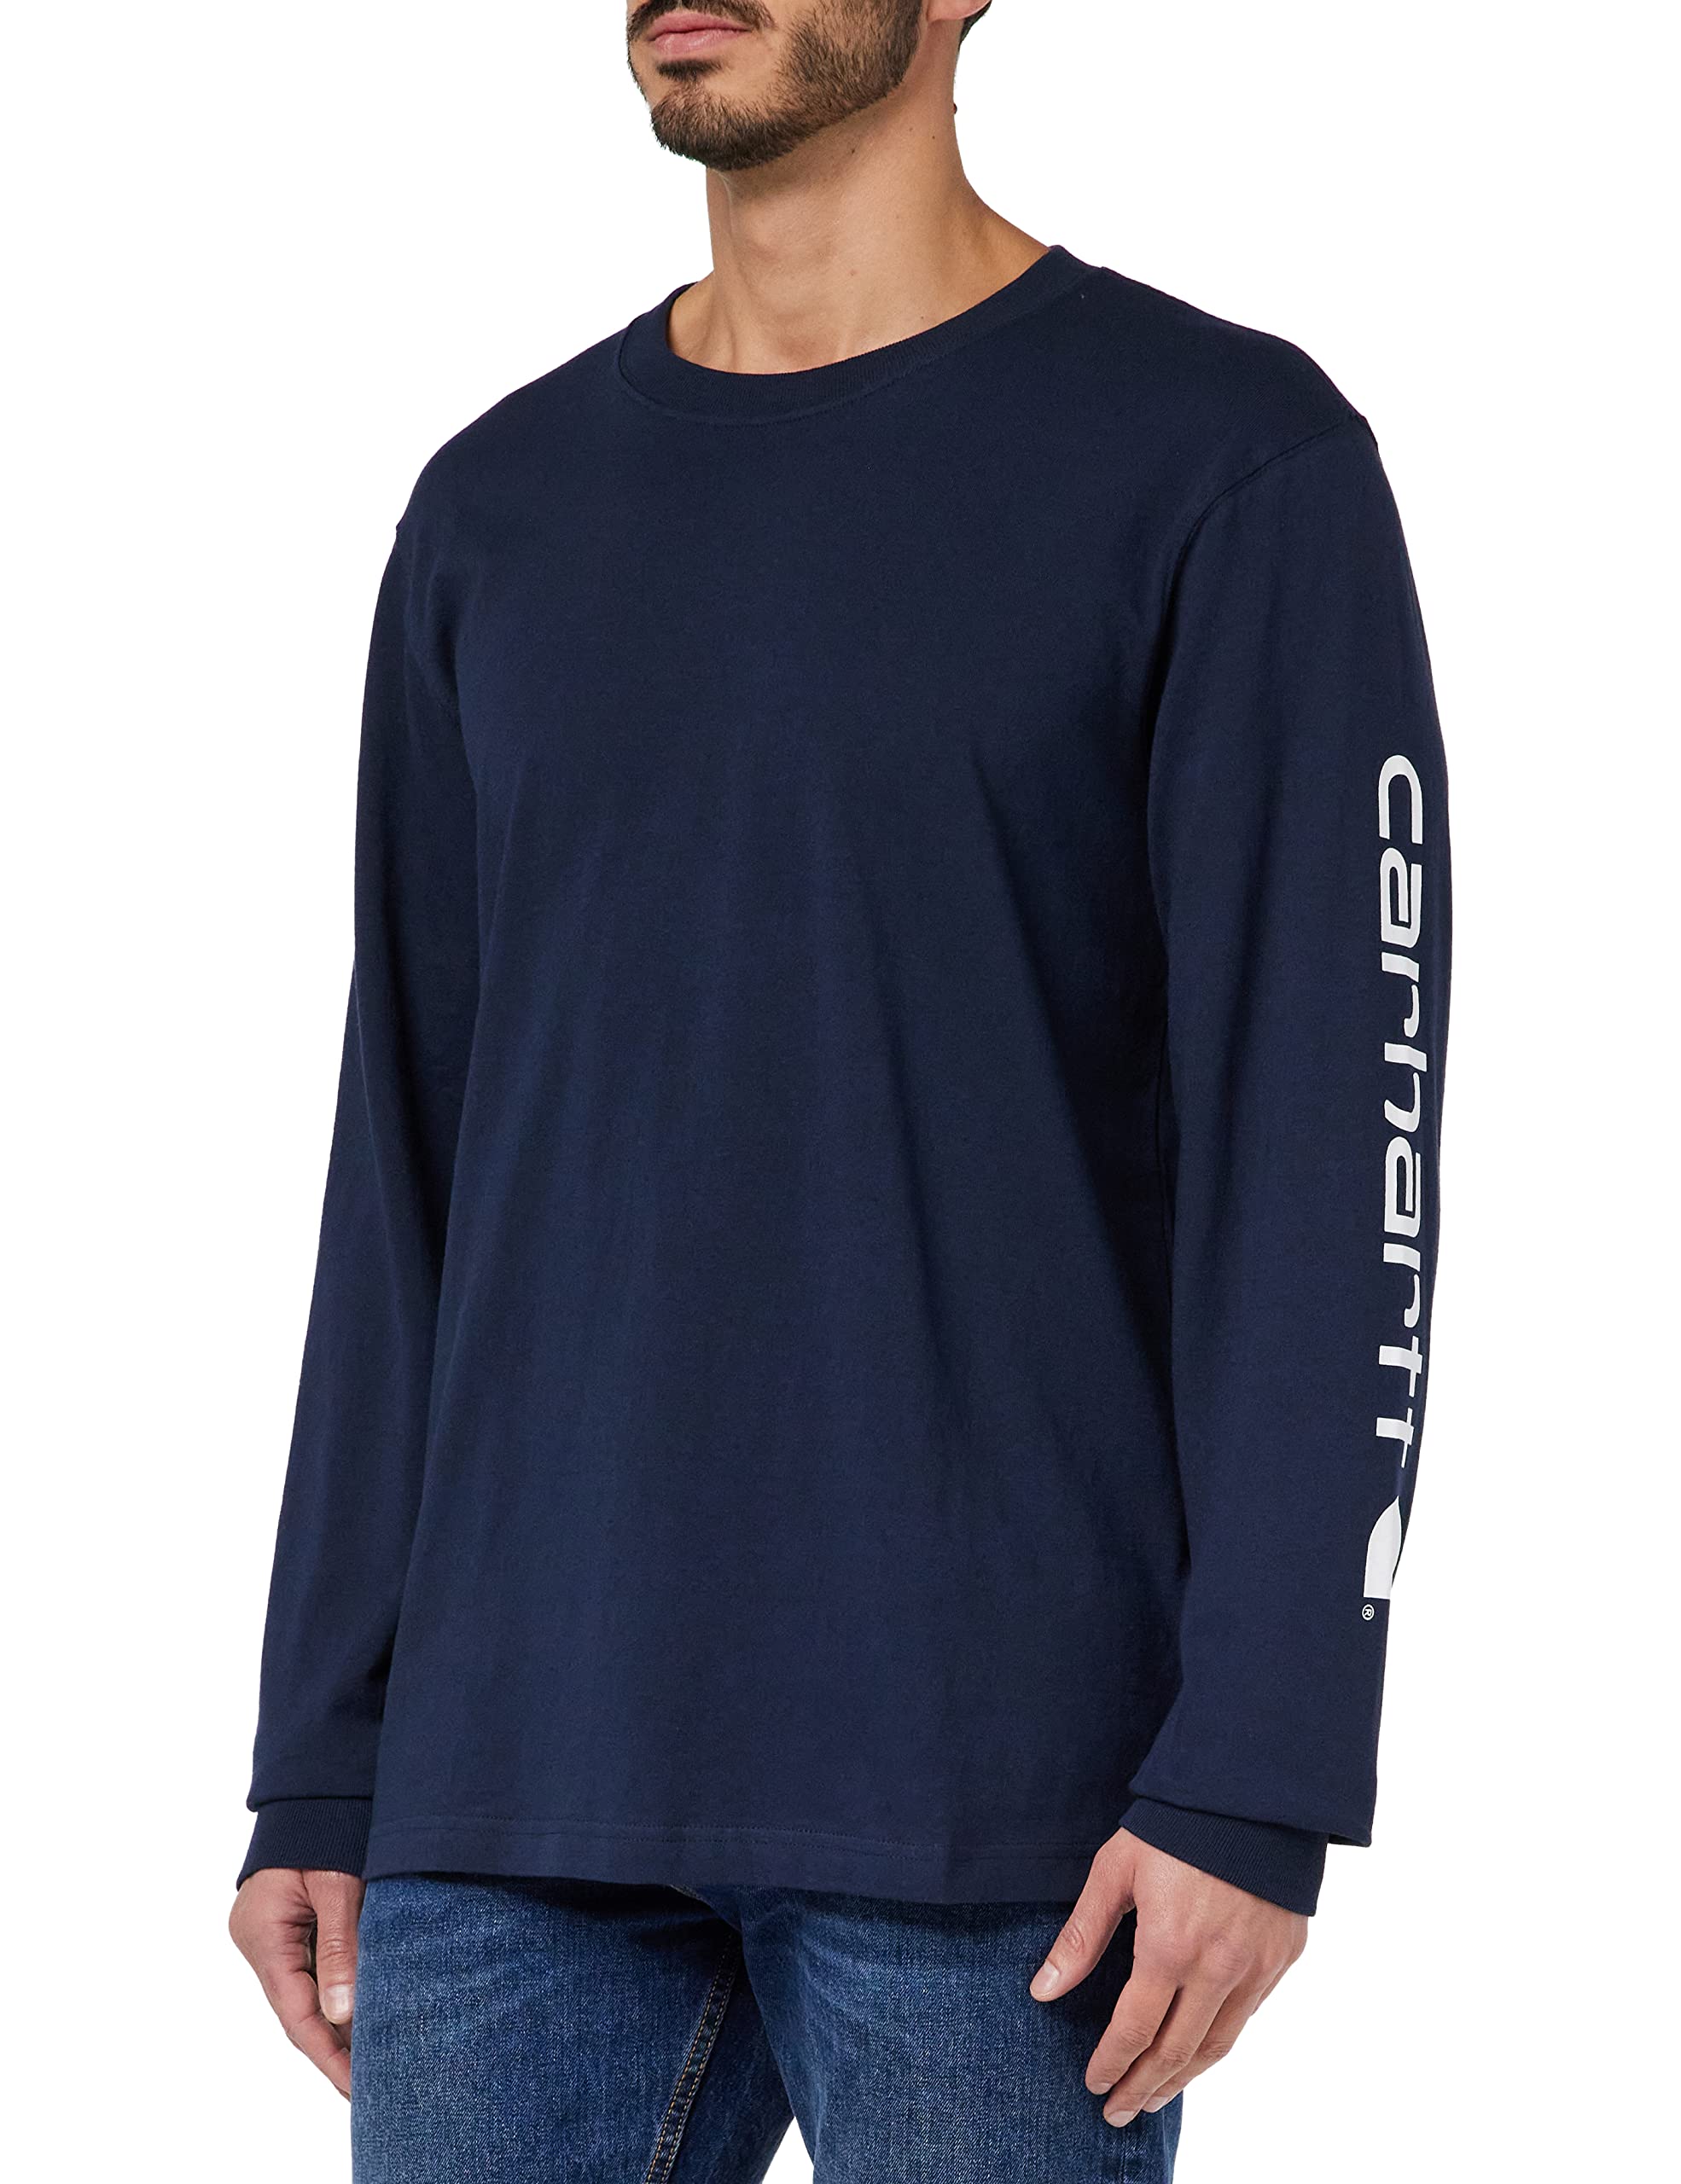 Carhartt, Herren, Lockeres, schweres, langärmliges T-Shirt mit Logo-Grafik auf dem Ärmel, Marineblau, M